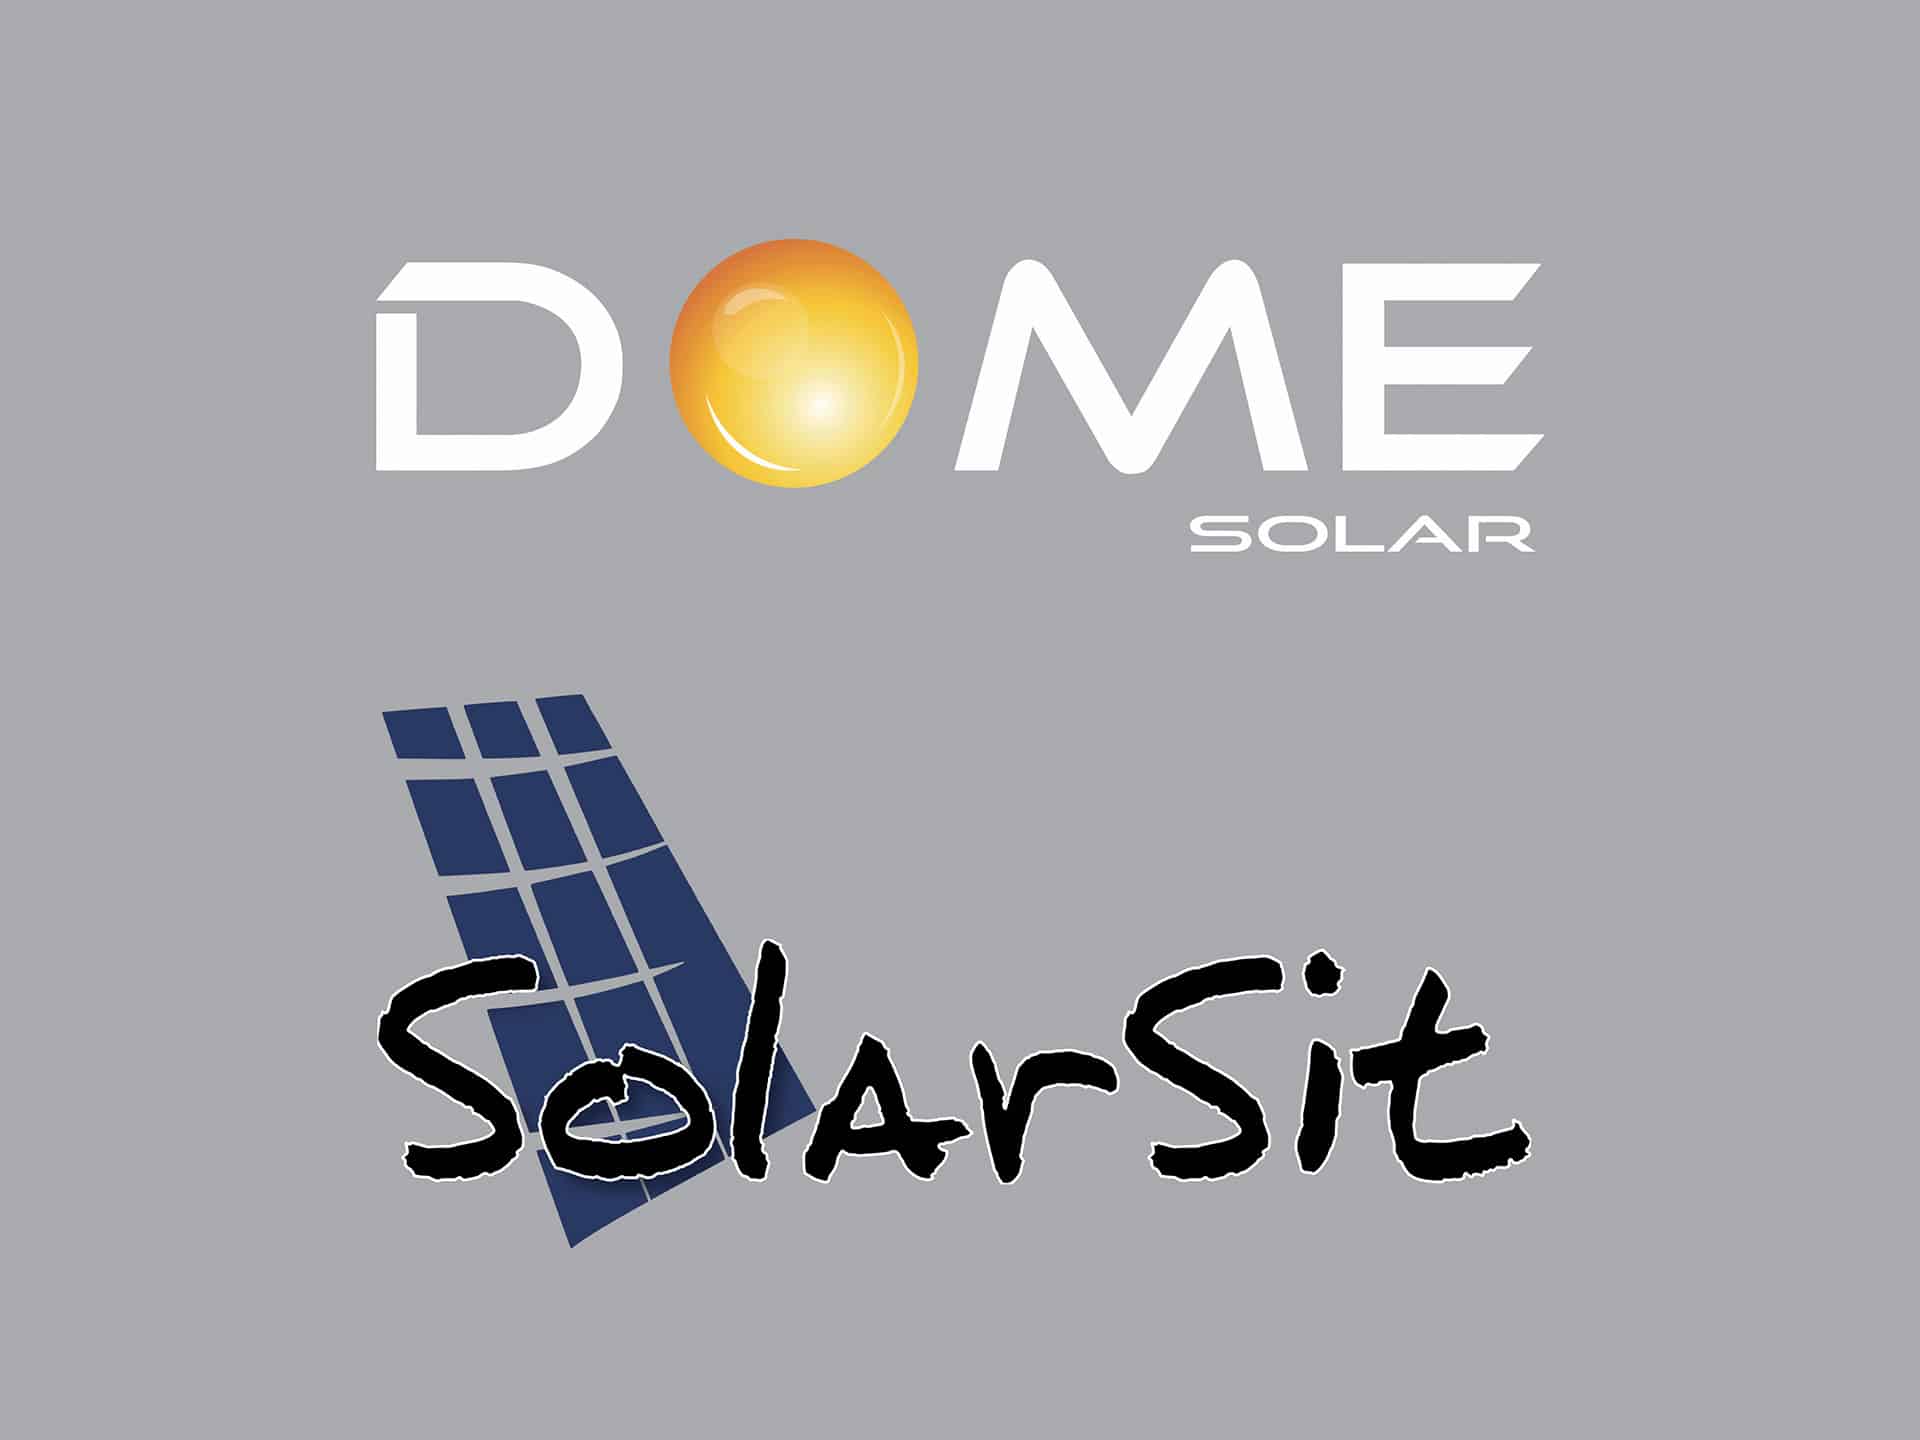 La société Solarsit rejoint Dome Solar